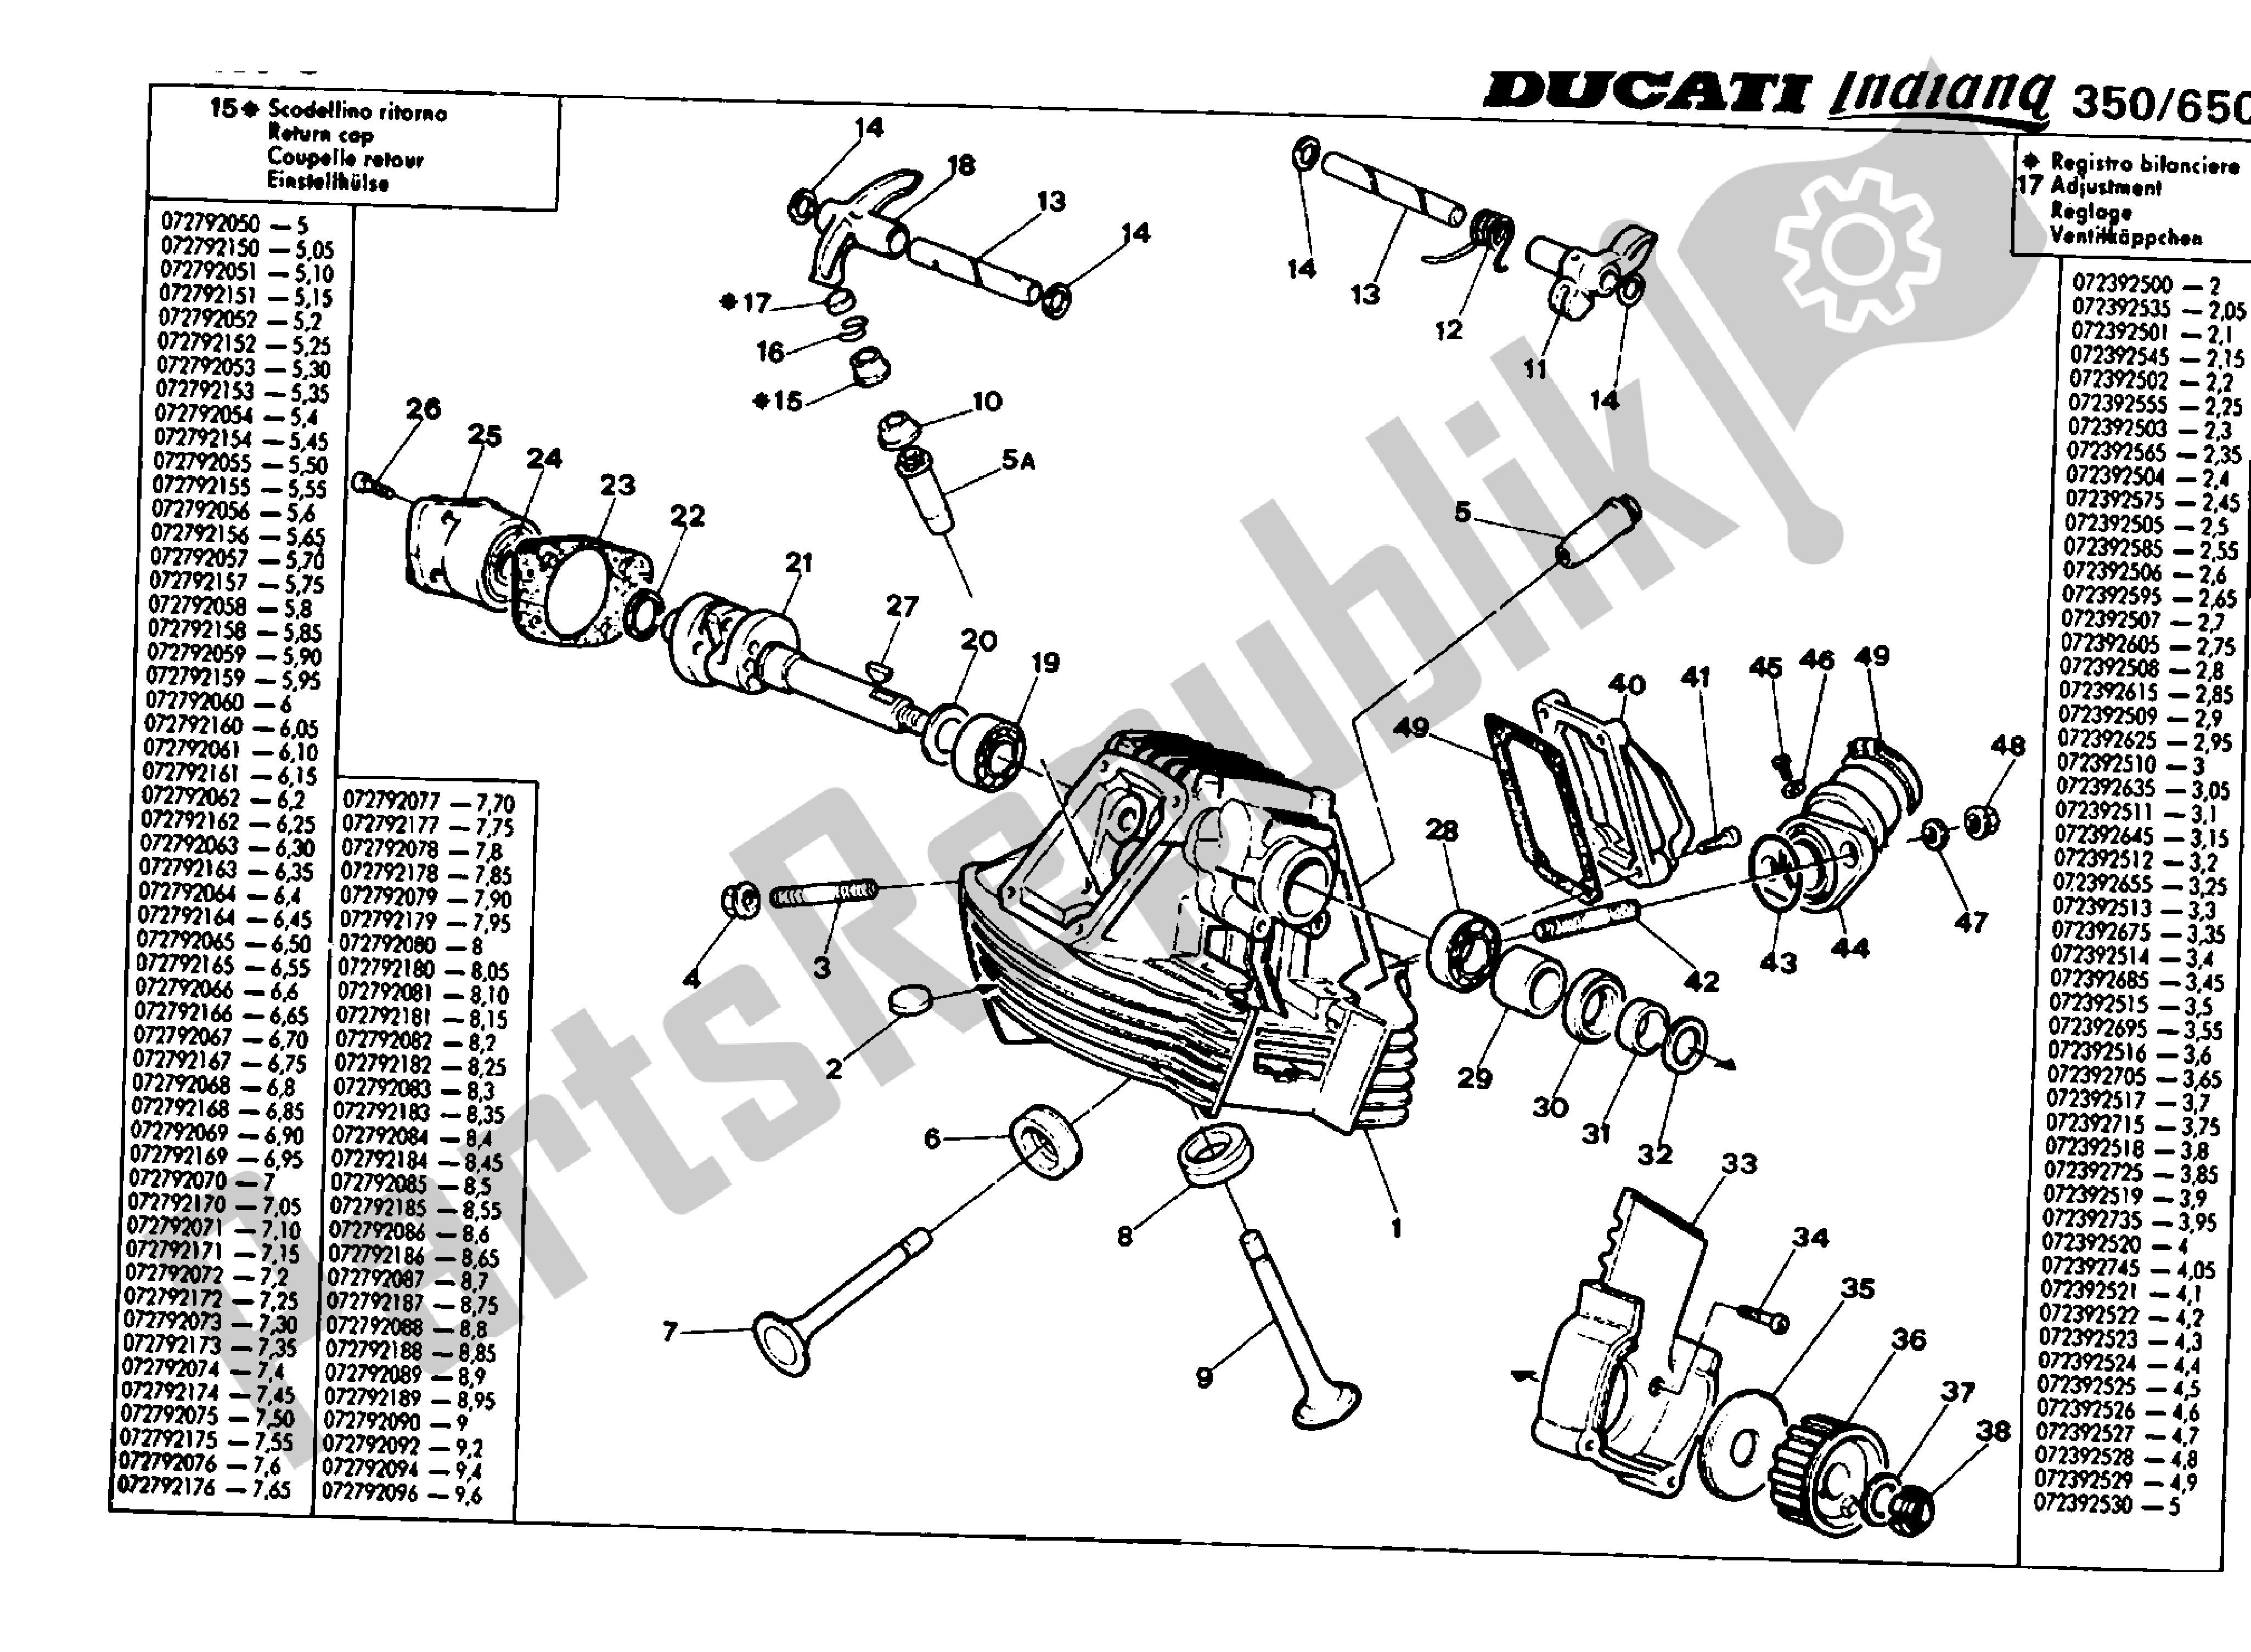 Alle onderdelen voor de Verticale Kop van de Ducati Indiana 350 1986 - 1987